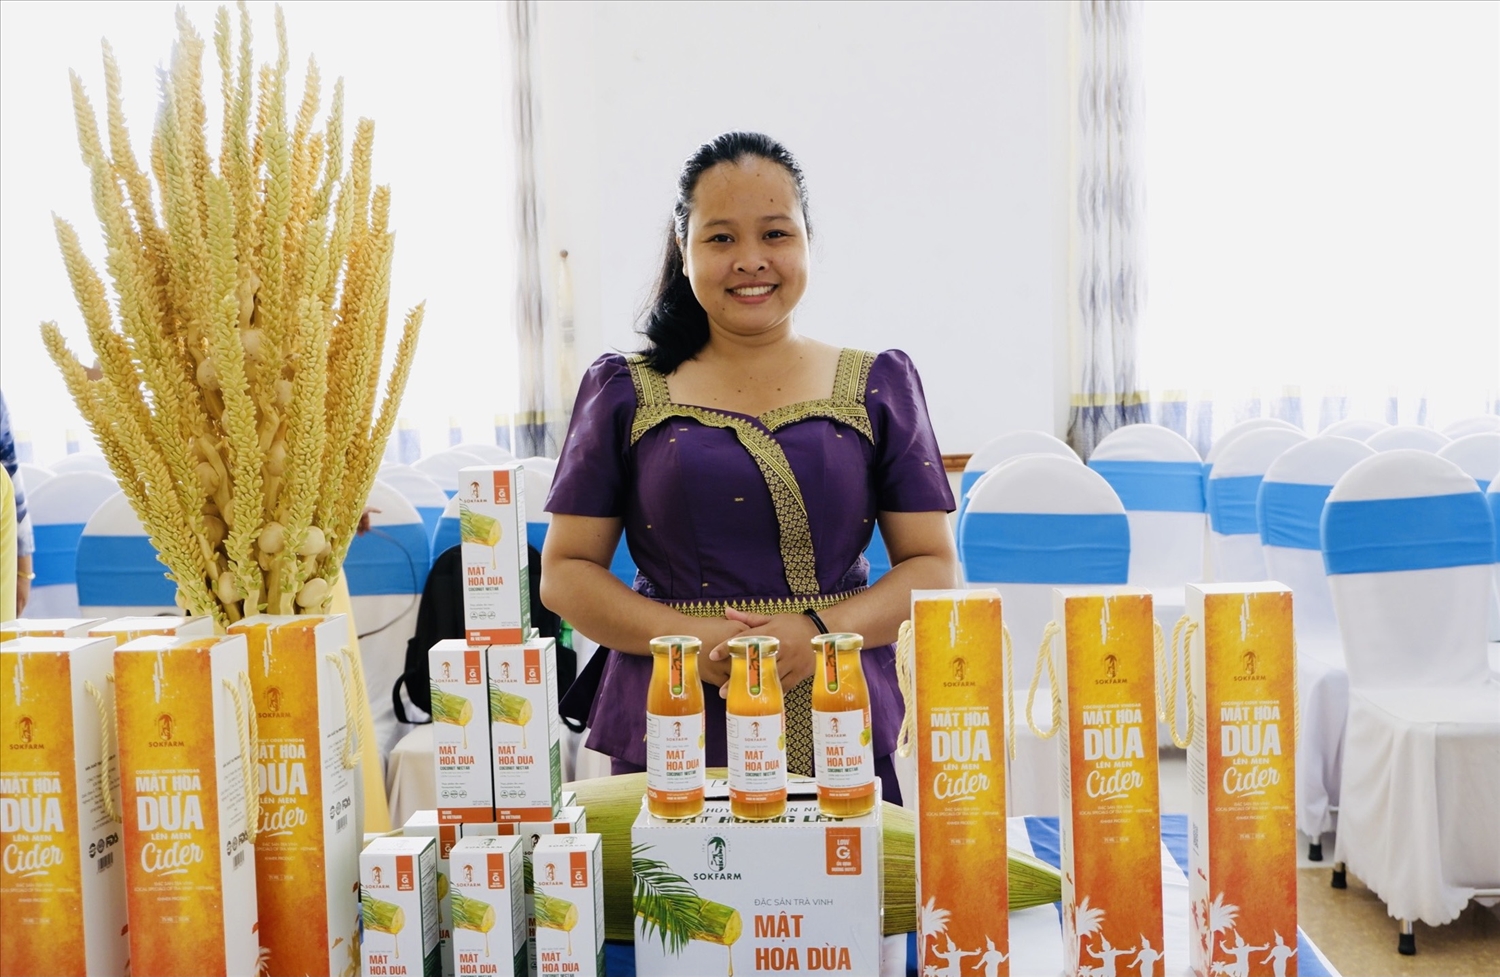 Chị Thạch Thị Chal Thi giới thiệu sản phẩm mật hoa dừa của Công ty